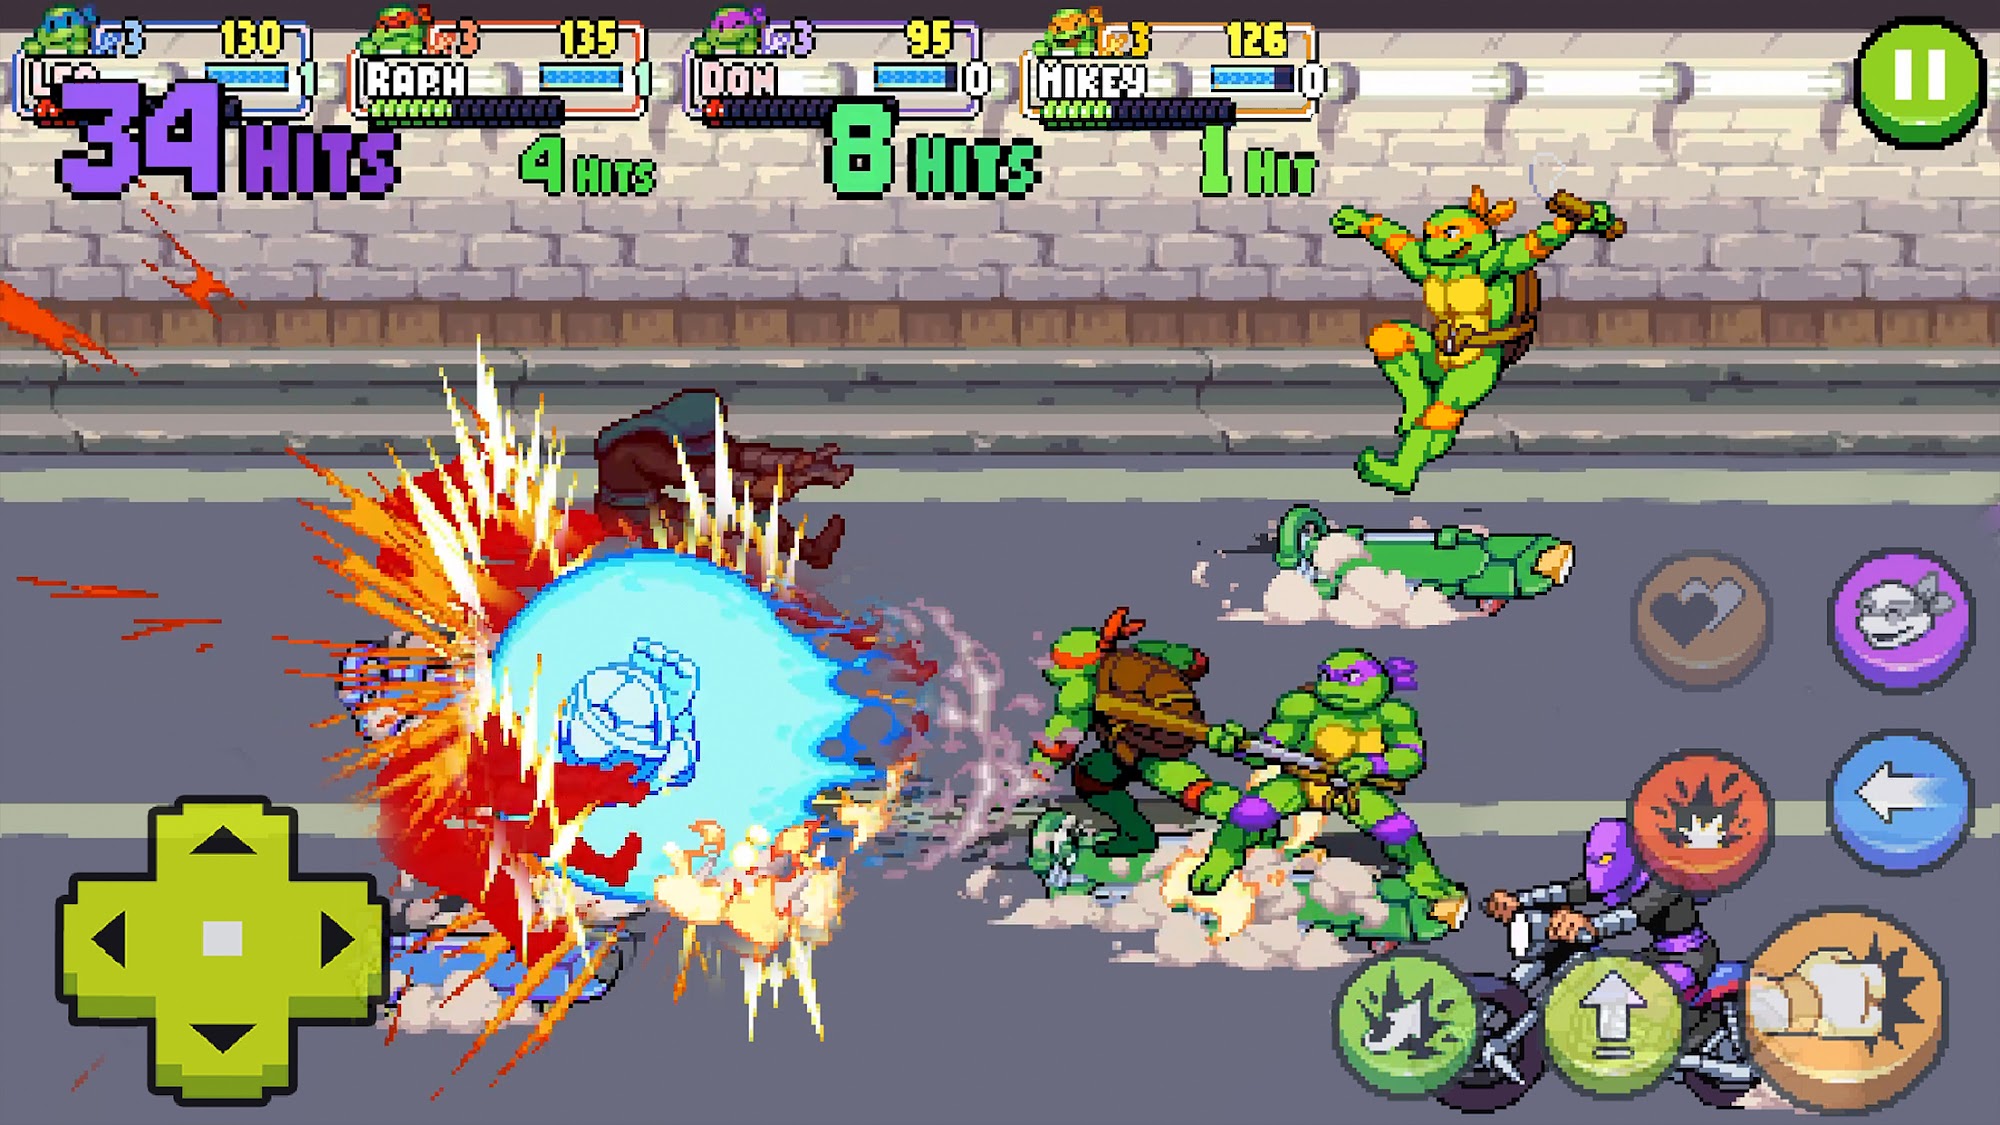 TMNT: Shredder's Revenge - Android game screenshots.